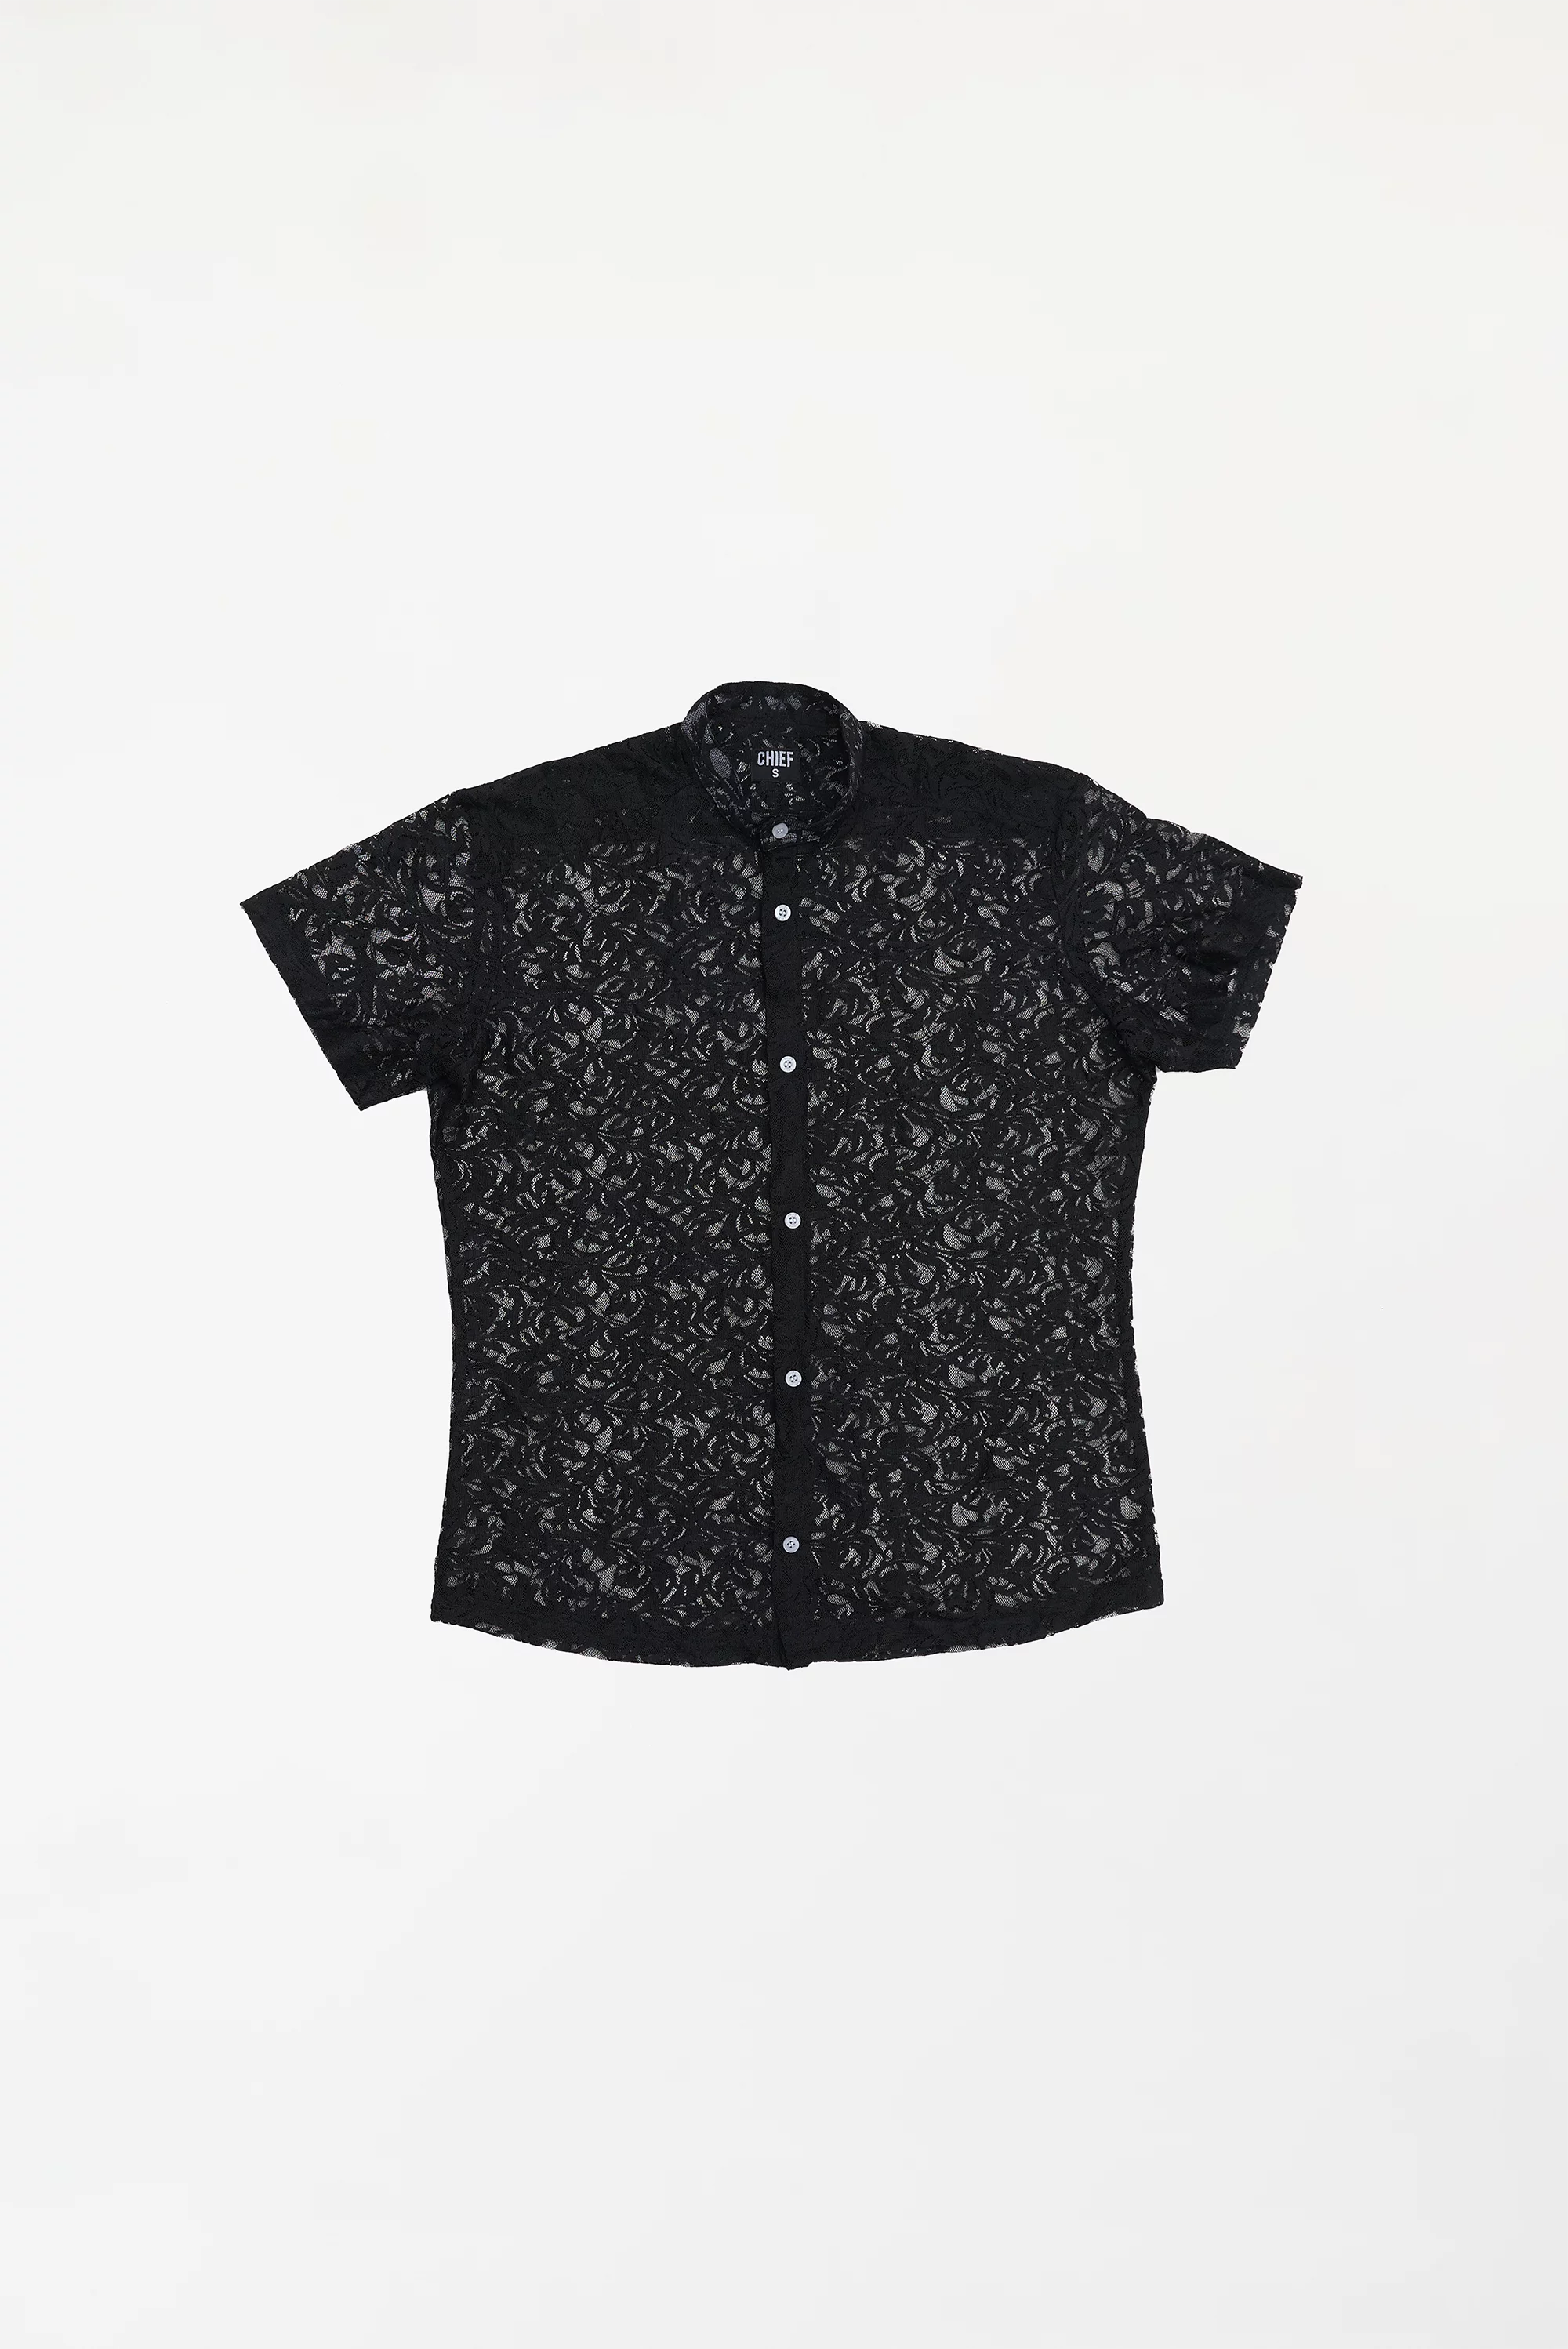 Men's Semi-Sheer Floral Shirt Black